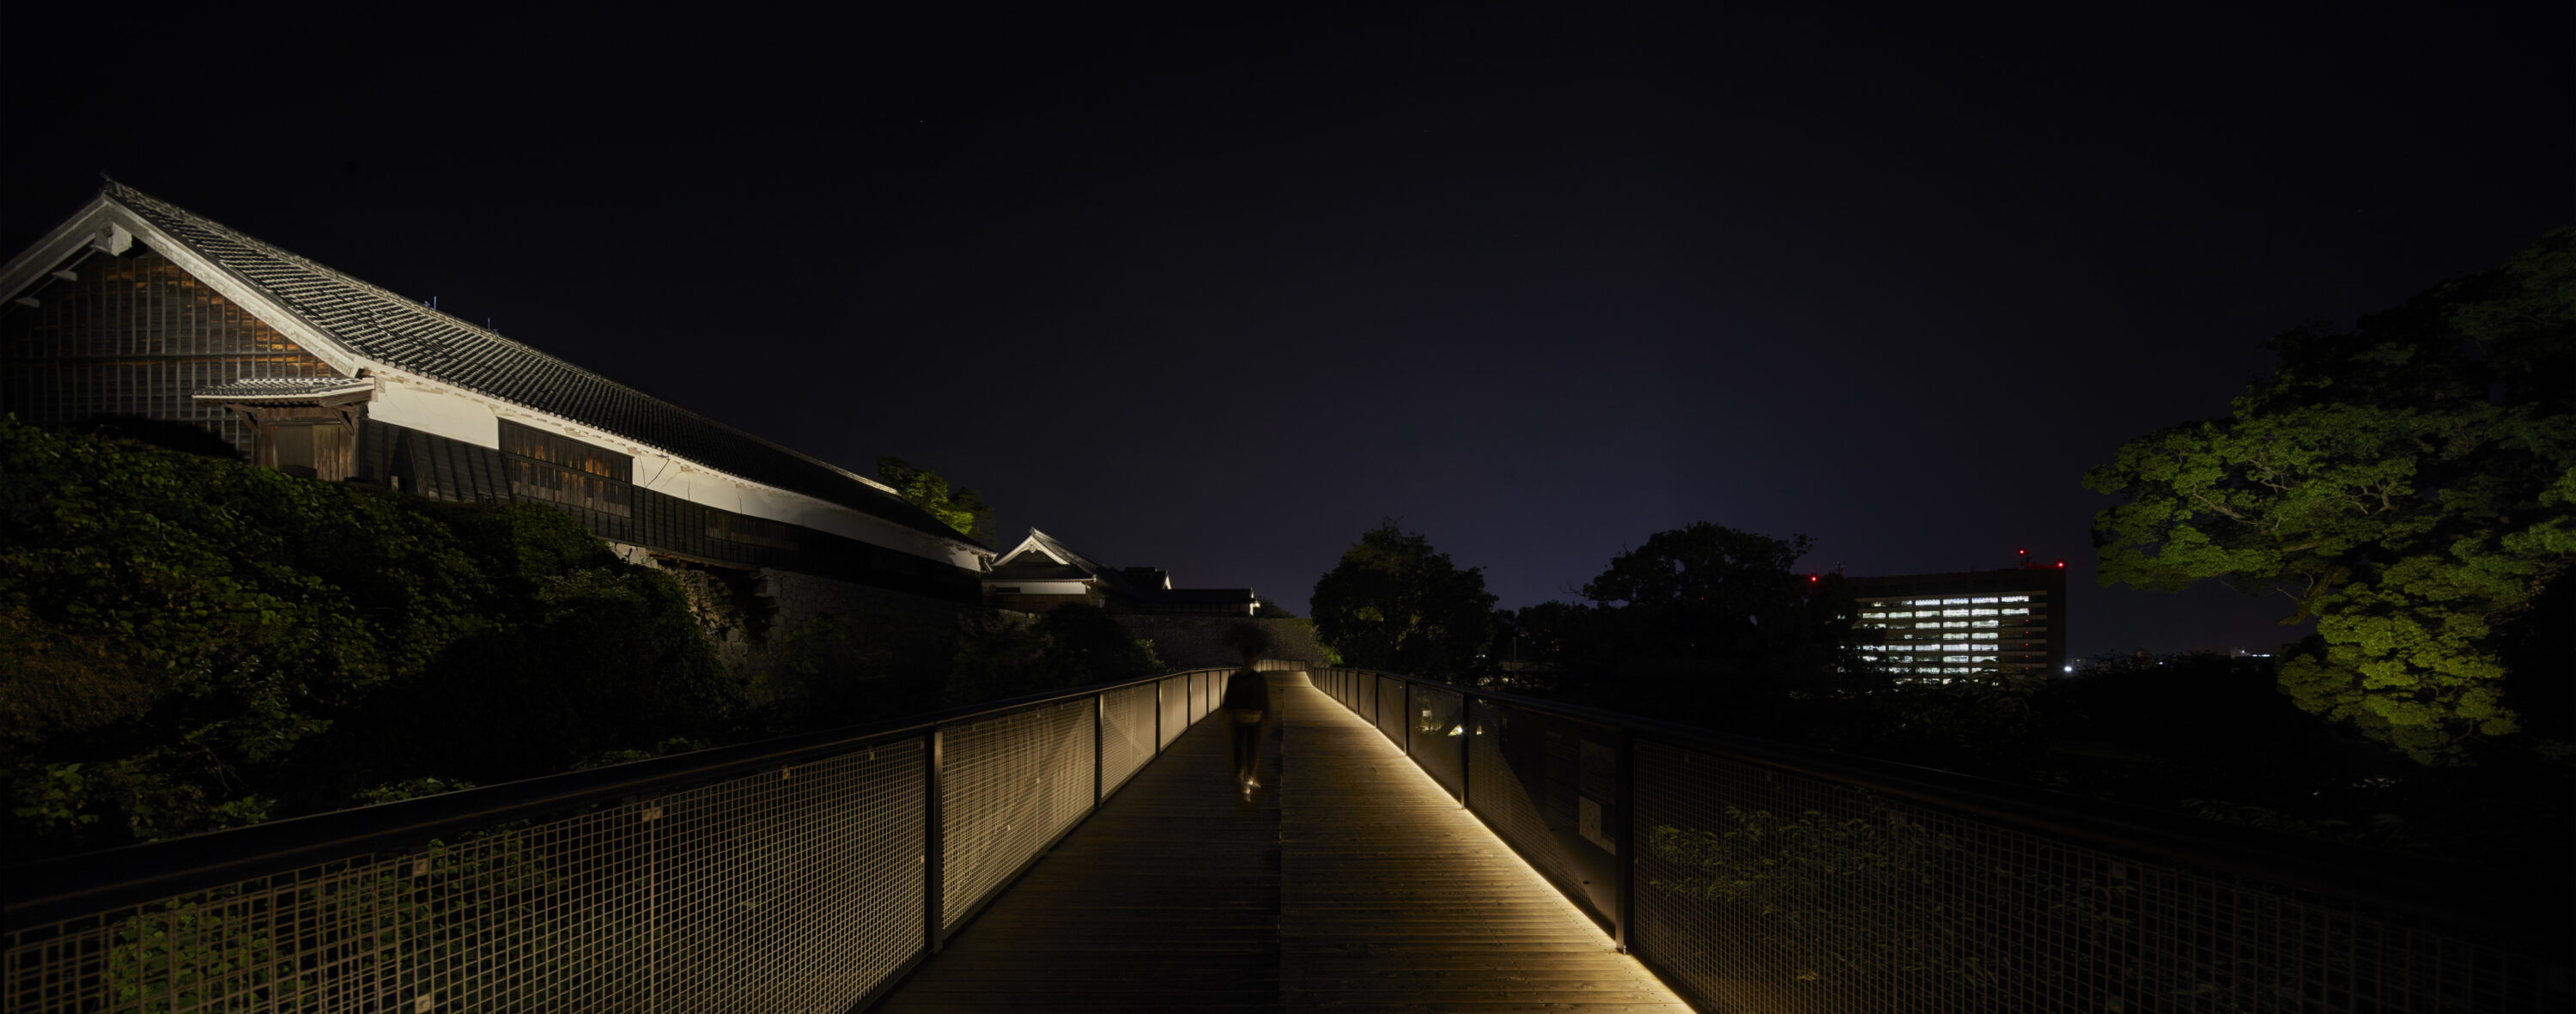 熊本城特別見学通路周辺屋外照明設備改修工事